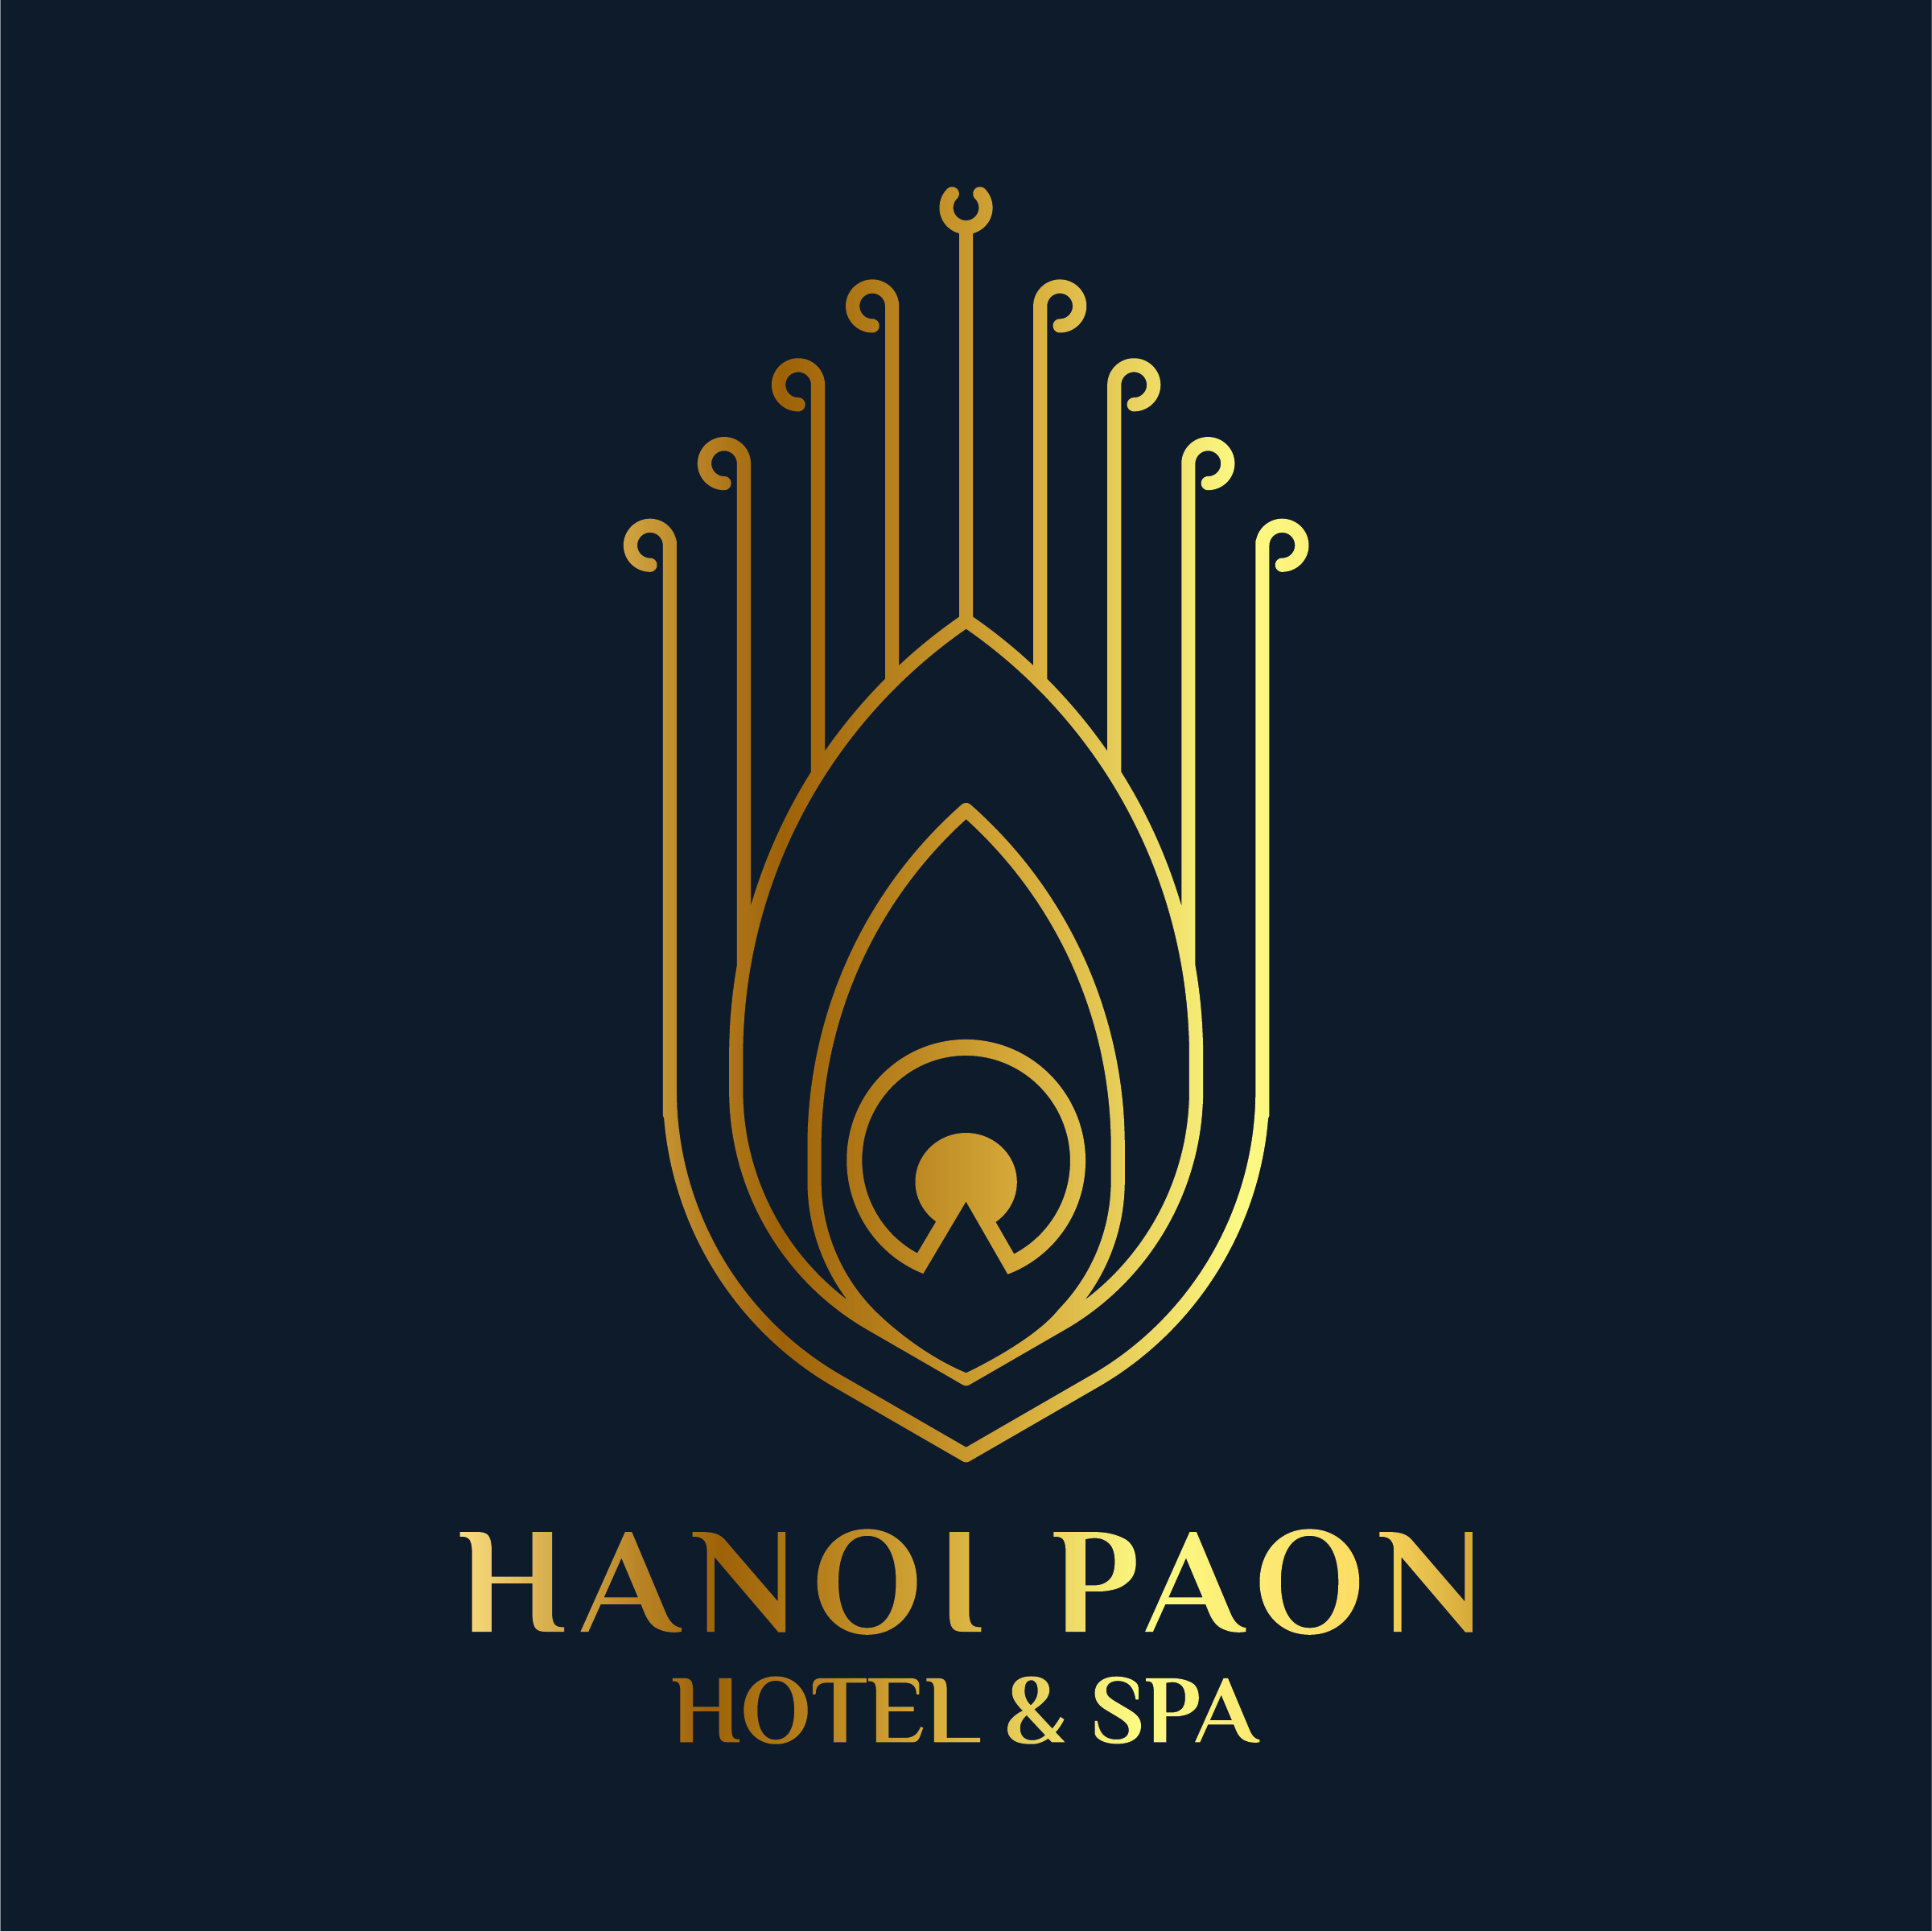 Hanoi Paon Hotel & Spa